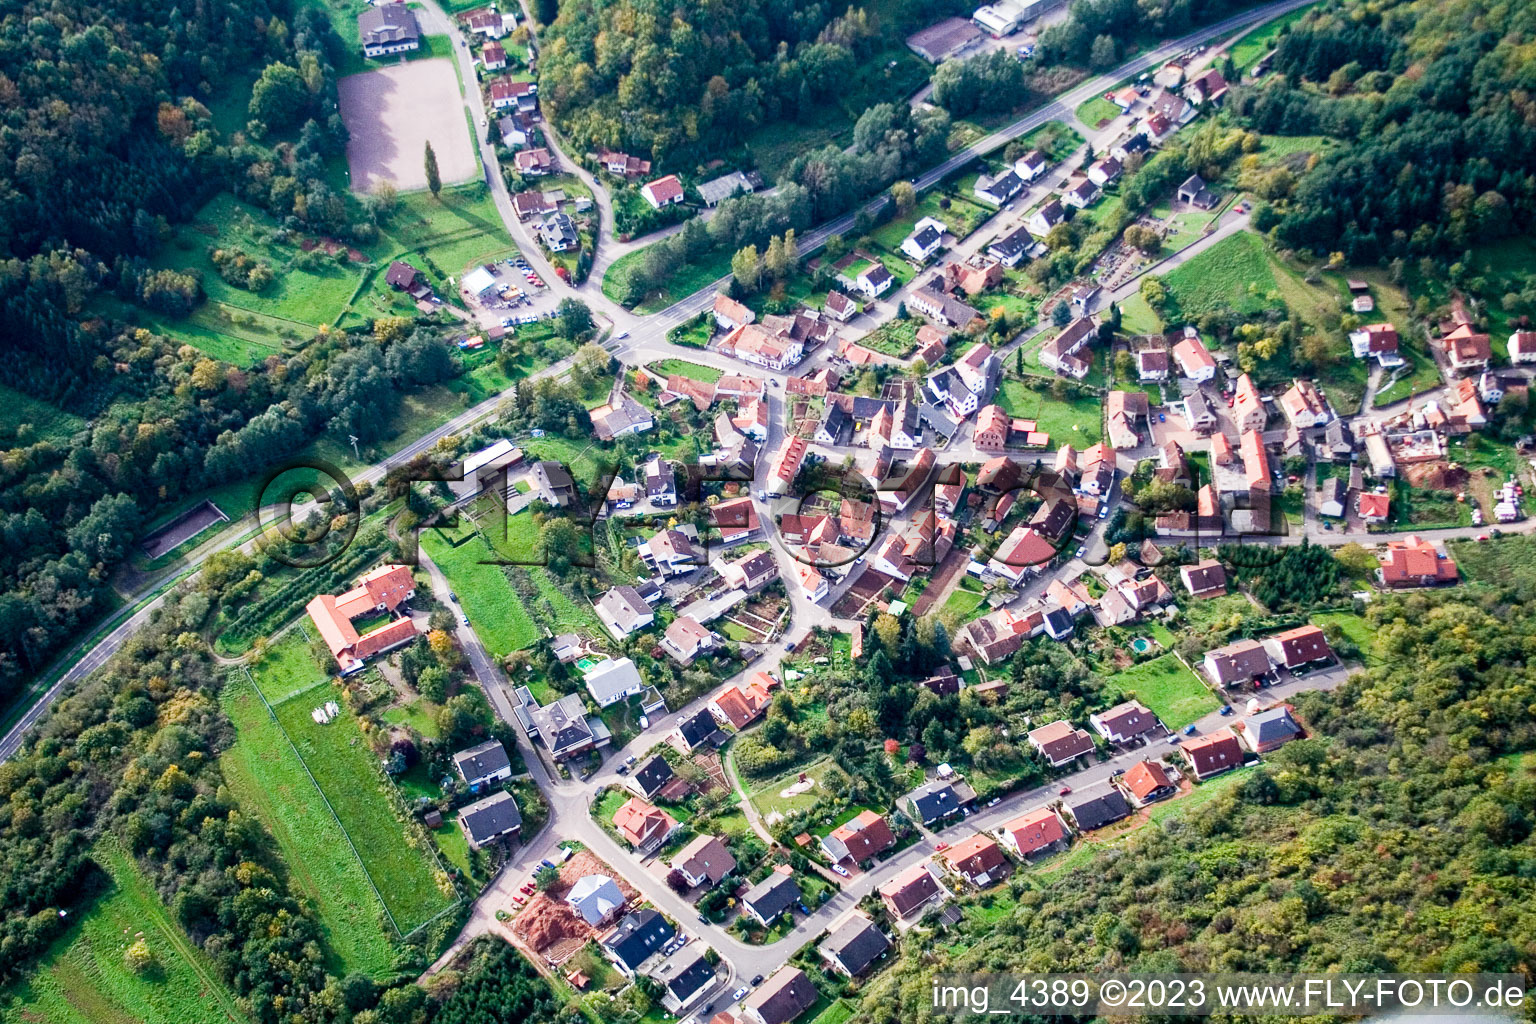 Waldhambach im Bundesland Rheinland-Pfalz, Deutschland von der Drohne aus gesehen